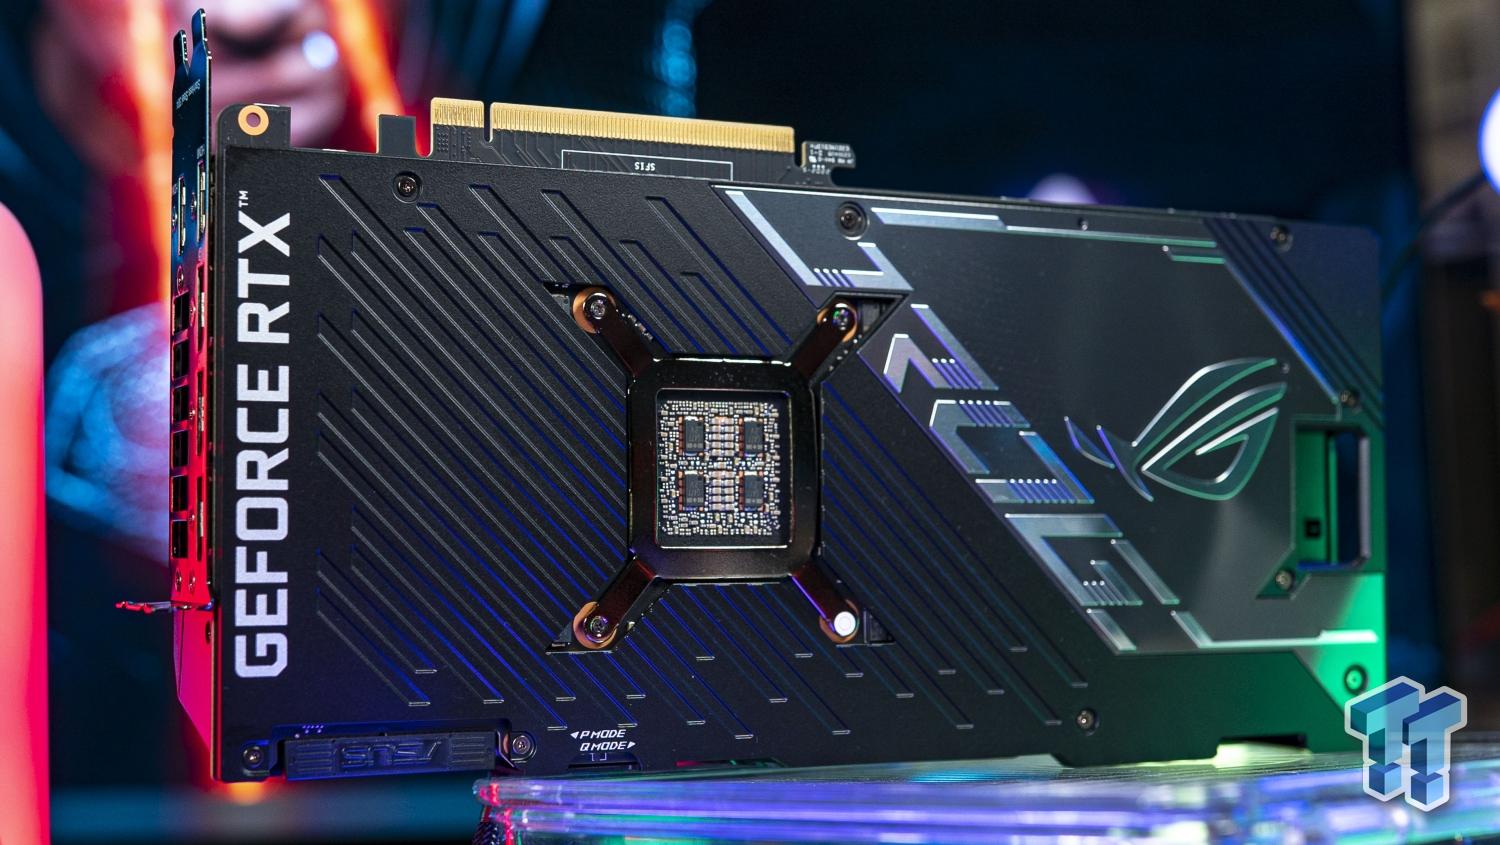 Nvidia RTX 4080 Ti 71% Faster Leak - AD102 Lovelace GPU 